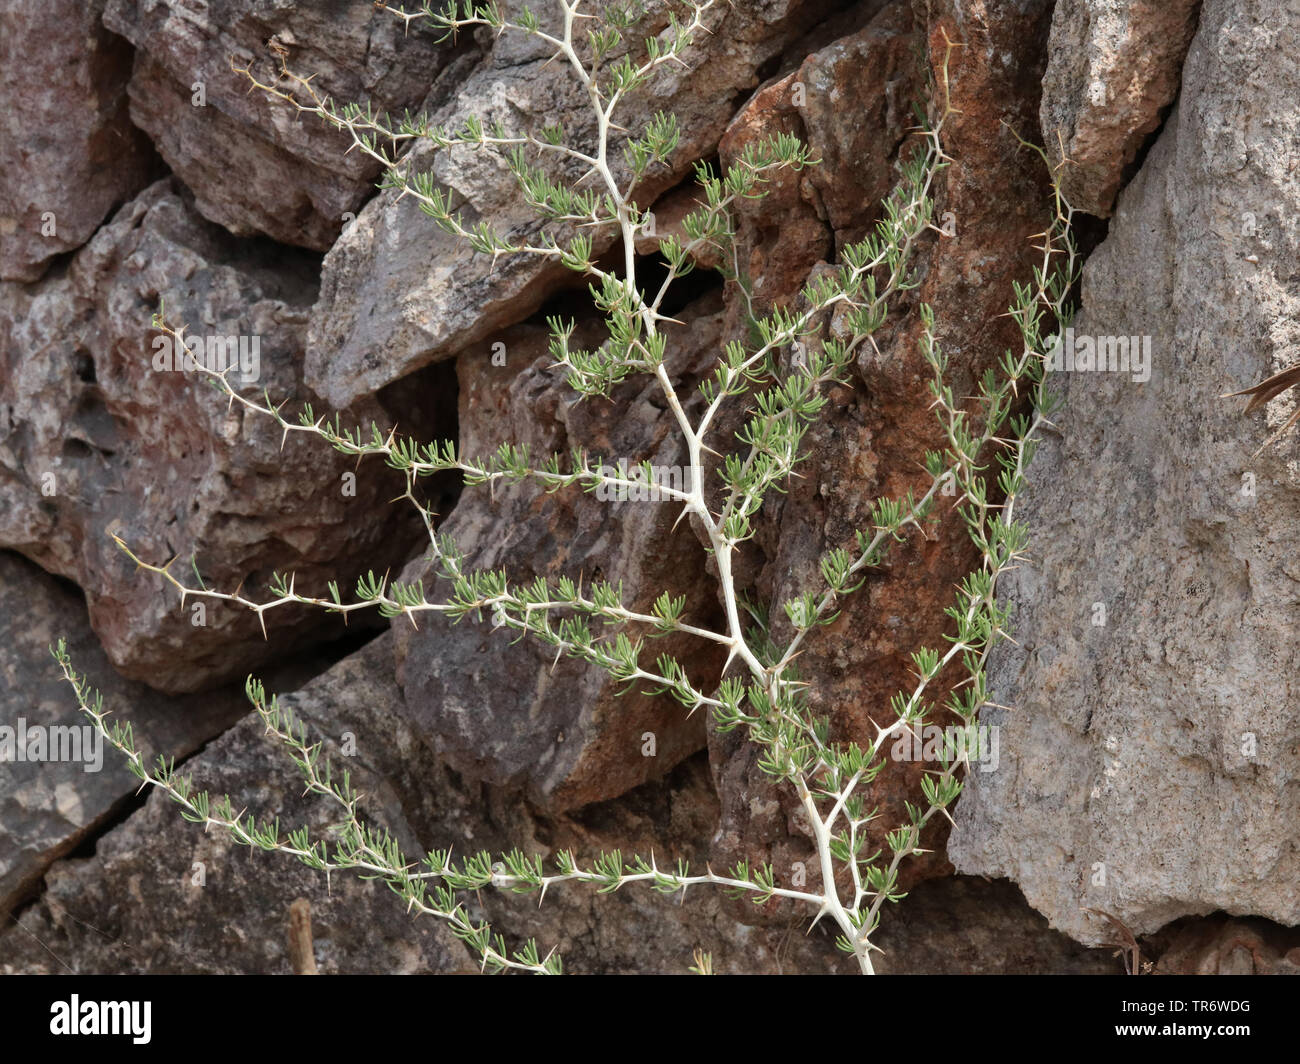 Espárrago blanco (Asparagus albus), sucursal, España, Islas Baleares, Mallorca Foto de stock